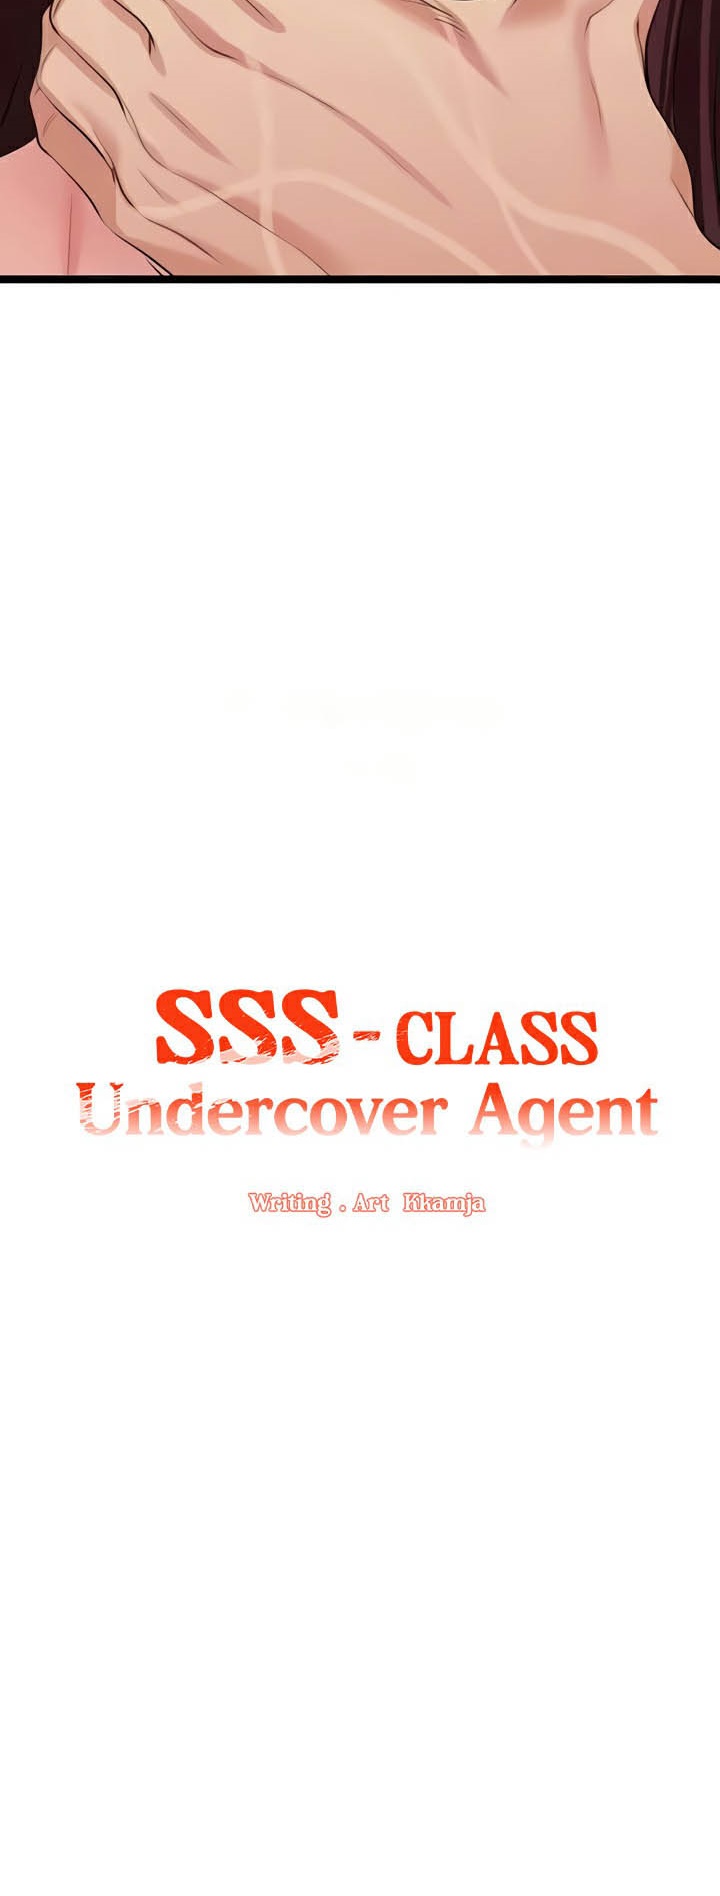 อ่านโดจิน เรื่อง SSS Class Undercover Agent 28 03